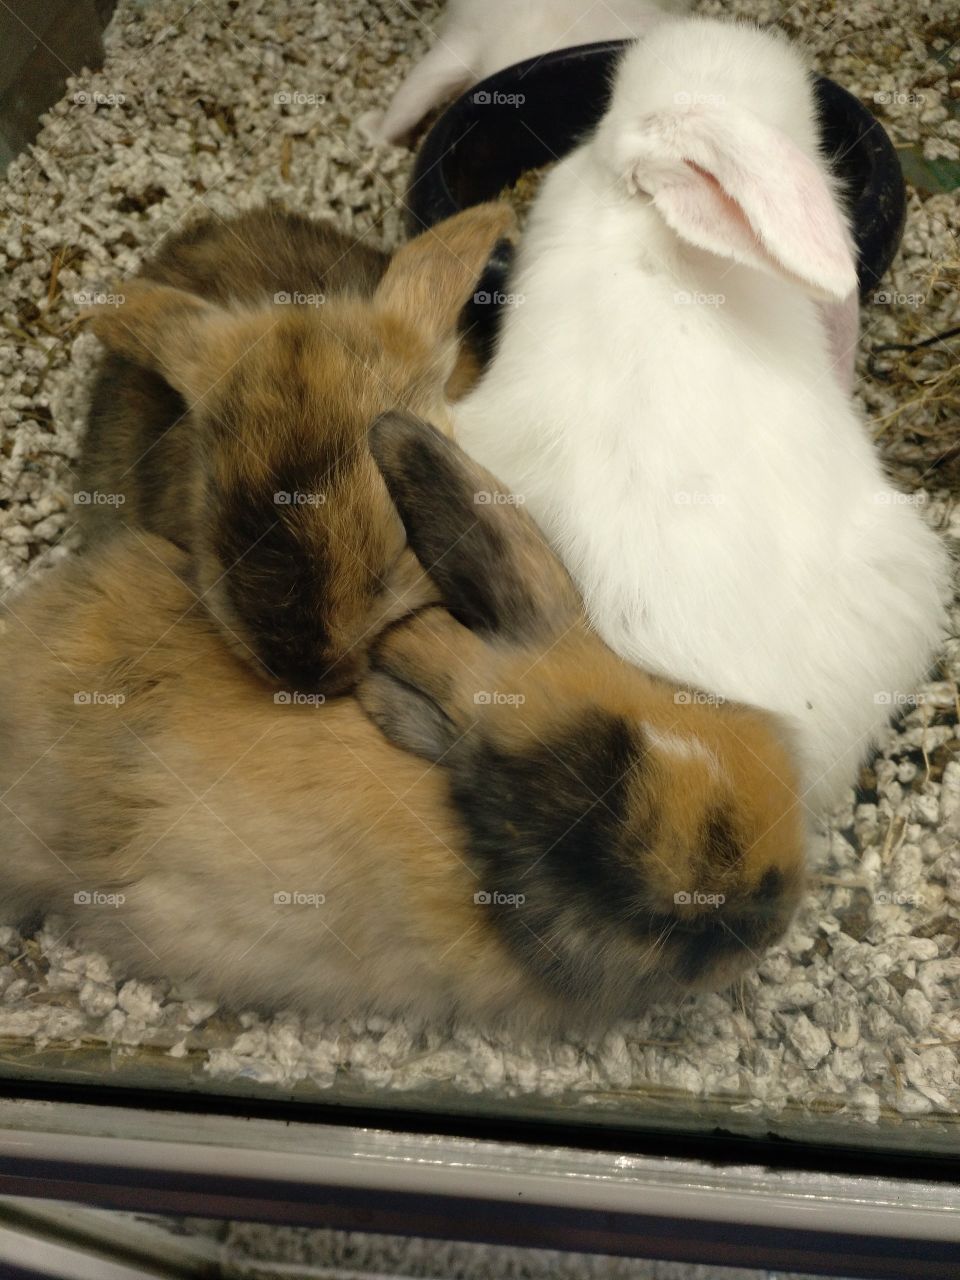 conejos en una tienda de mascotas durmiendo la siesta juntos en una cristalera muy bonito